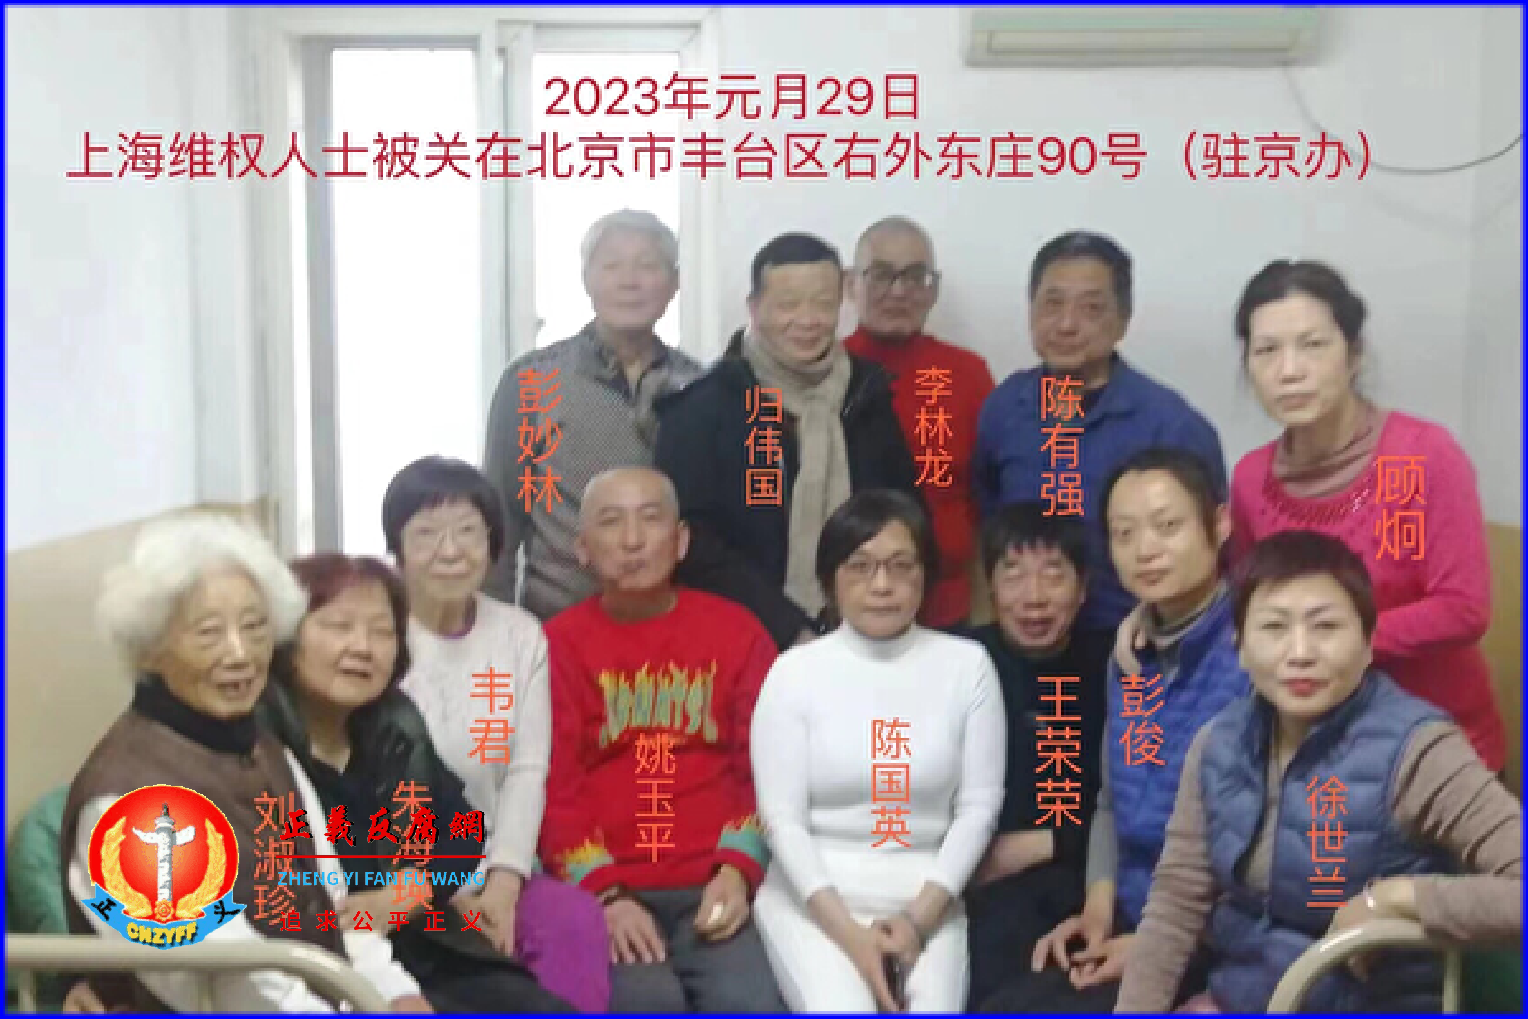 上海访民2023年1月29日进京上访遭劫访后遣返，陈国英、王荣荣被关黑监狱。.png